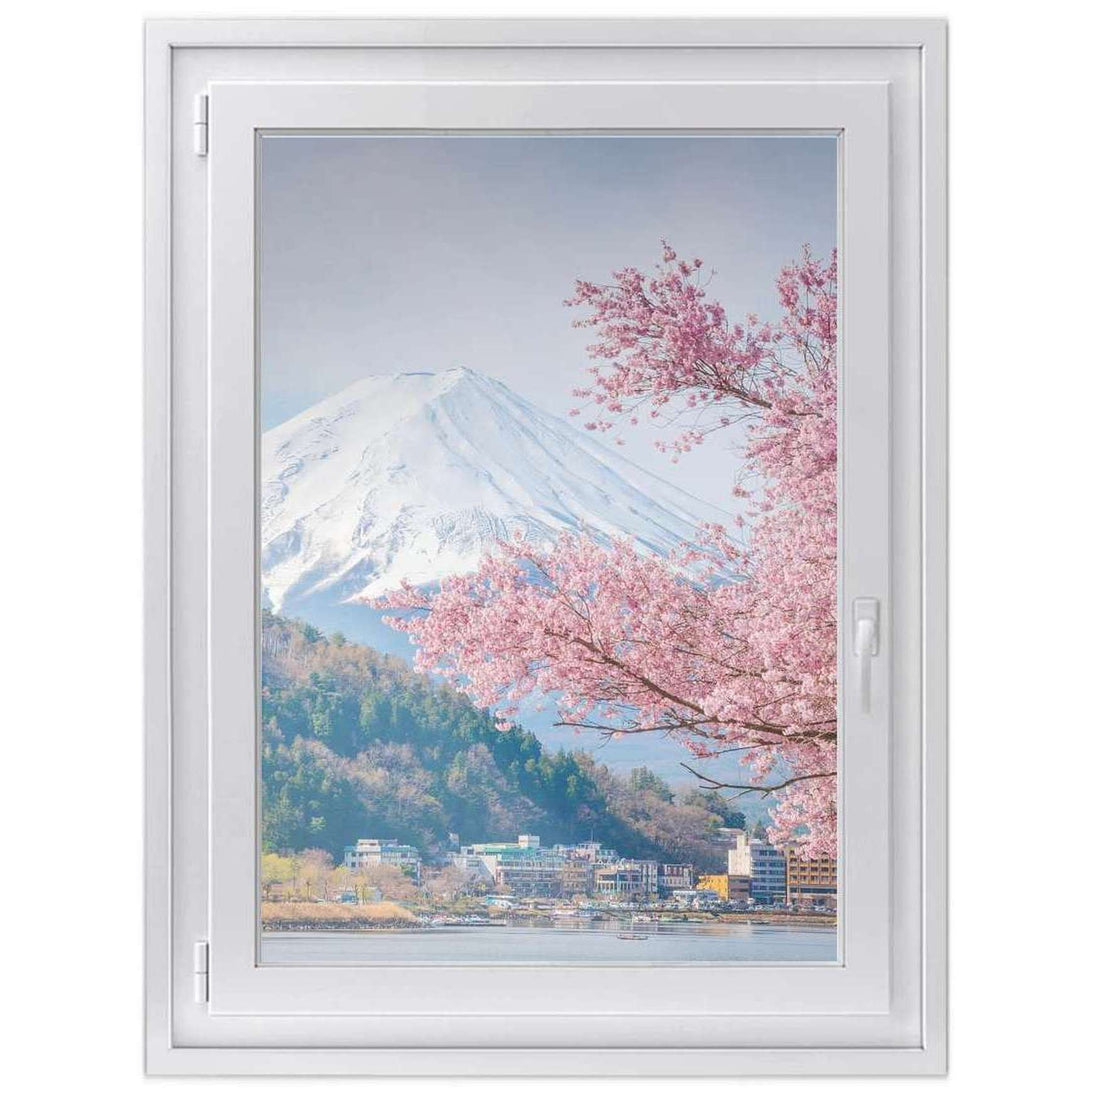 Fensterfolie [hoch] -Mount Fuji- Größe: 70x100 cm